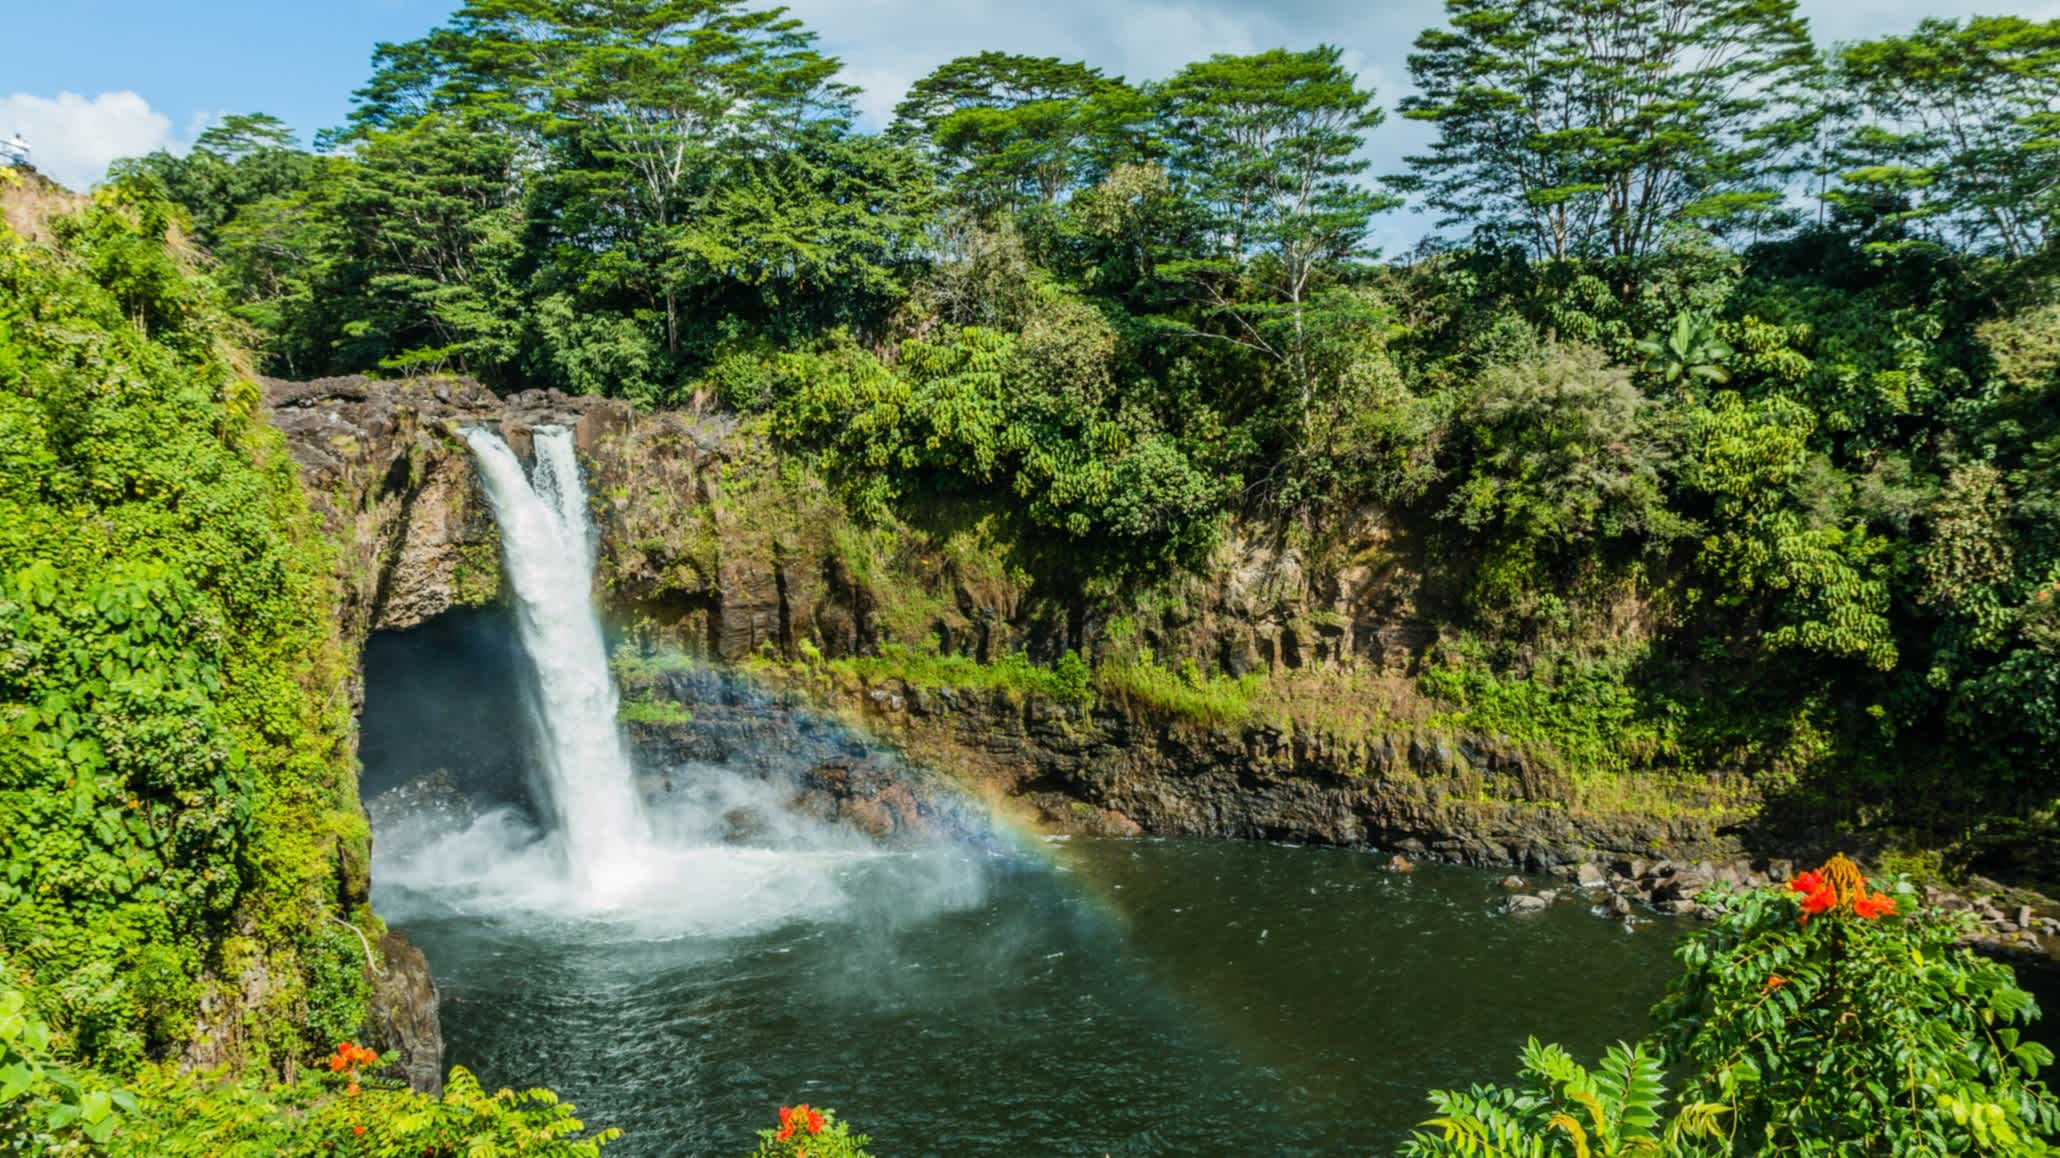 États-Unis, île d'Hawaï, vue sur la cascade Rainbow Falls à Hilo, parc d'état de la rivière Wailuku

